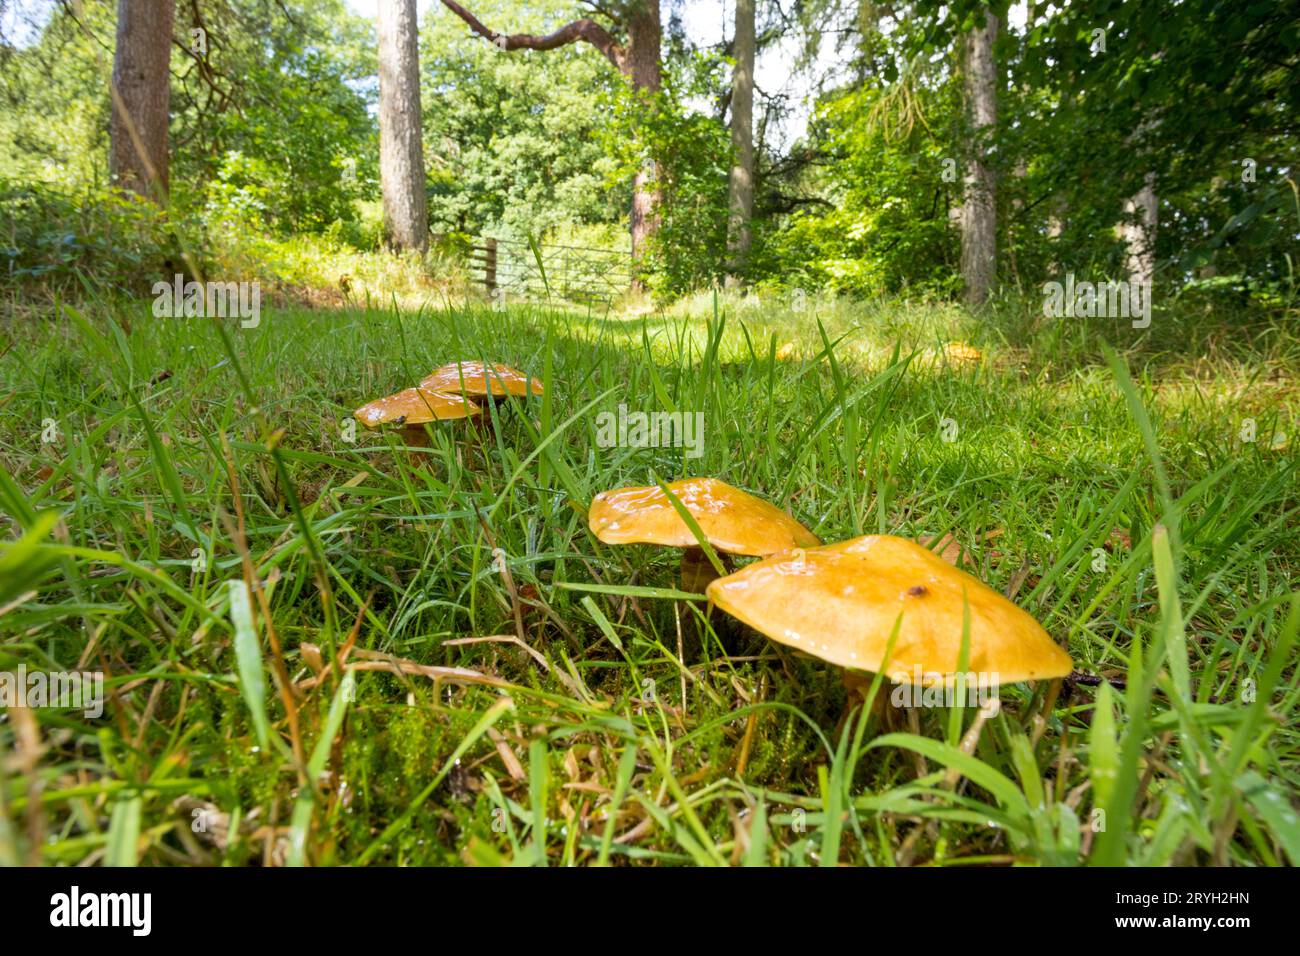 Lärchenboleten (Suillus grevillei) fungi fruchtigende Körper, die in Larch (Larix) Wald wachsen. Powys, Wales. Juli. Stockfoto